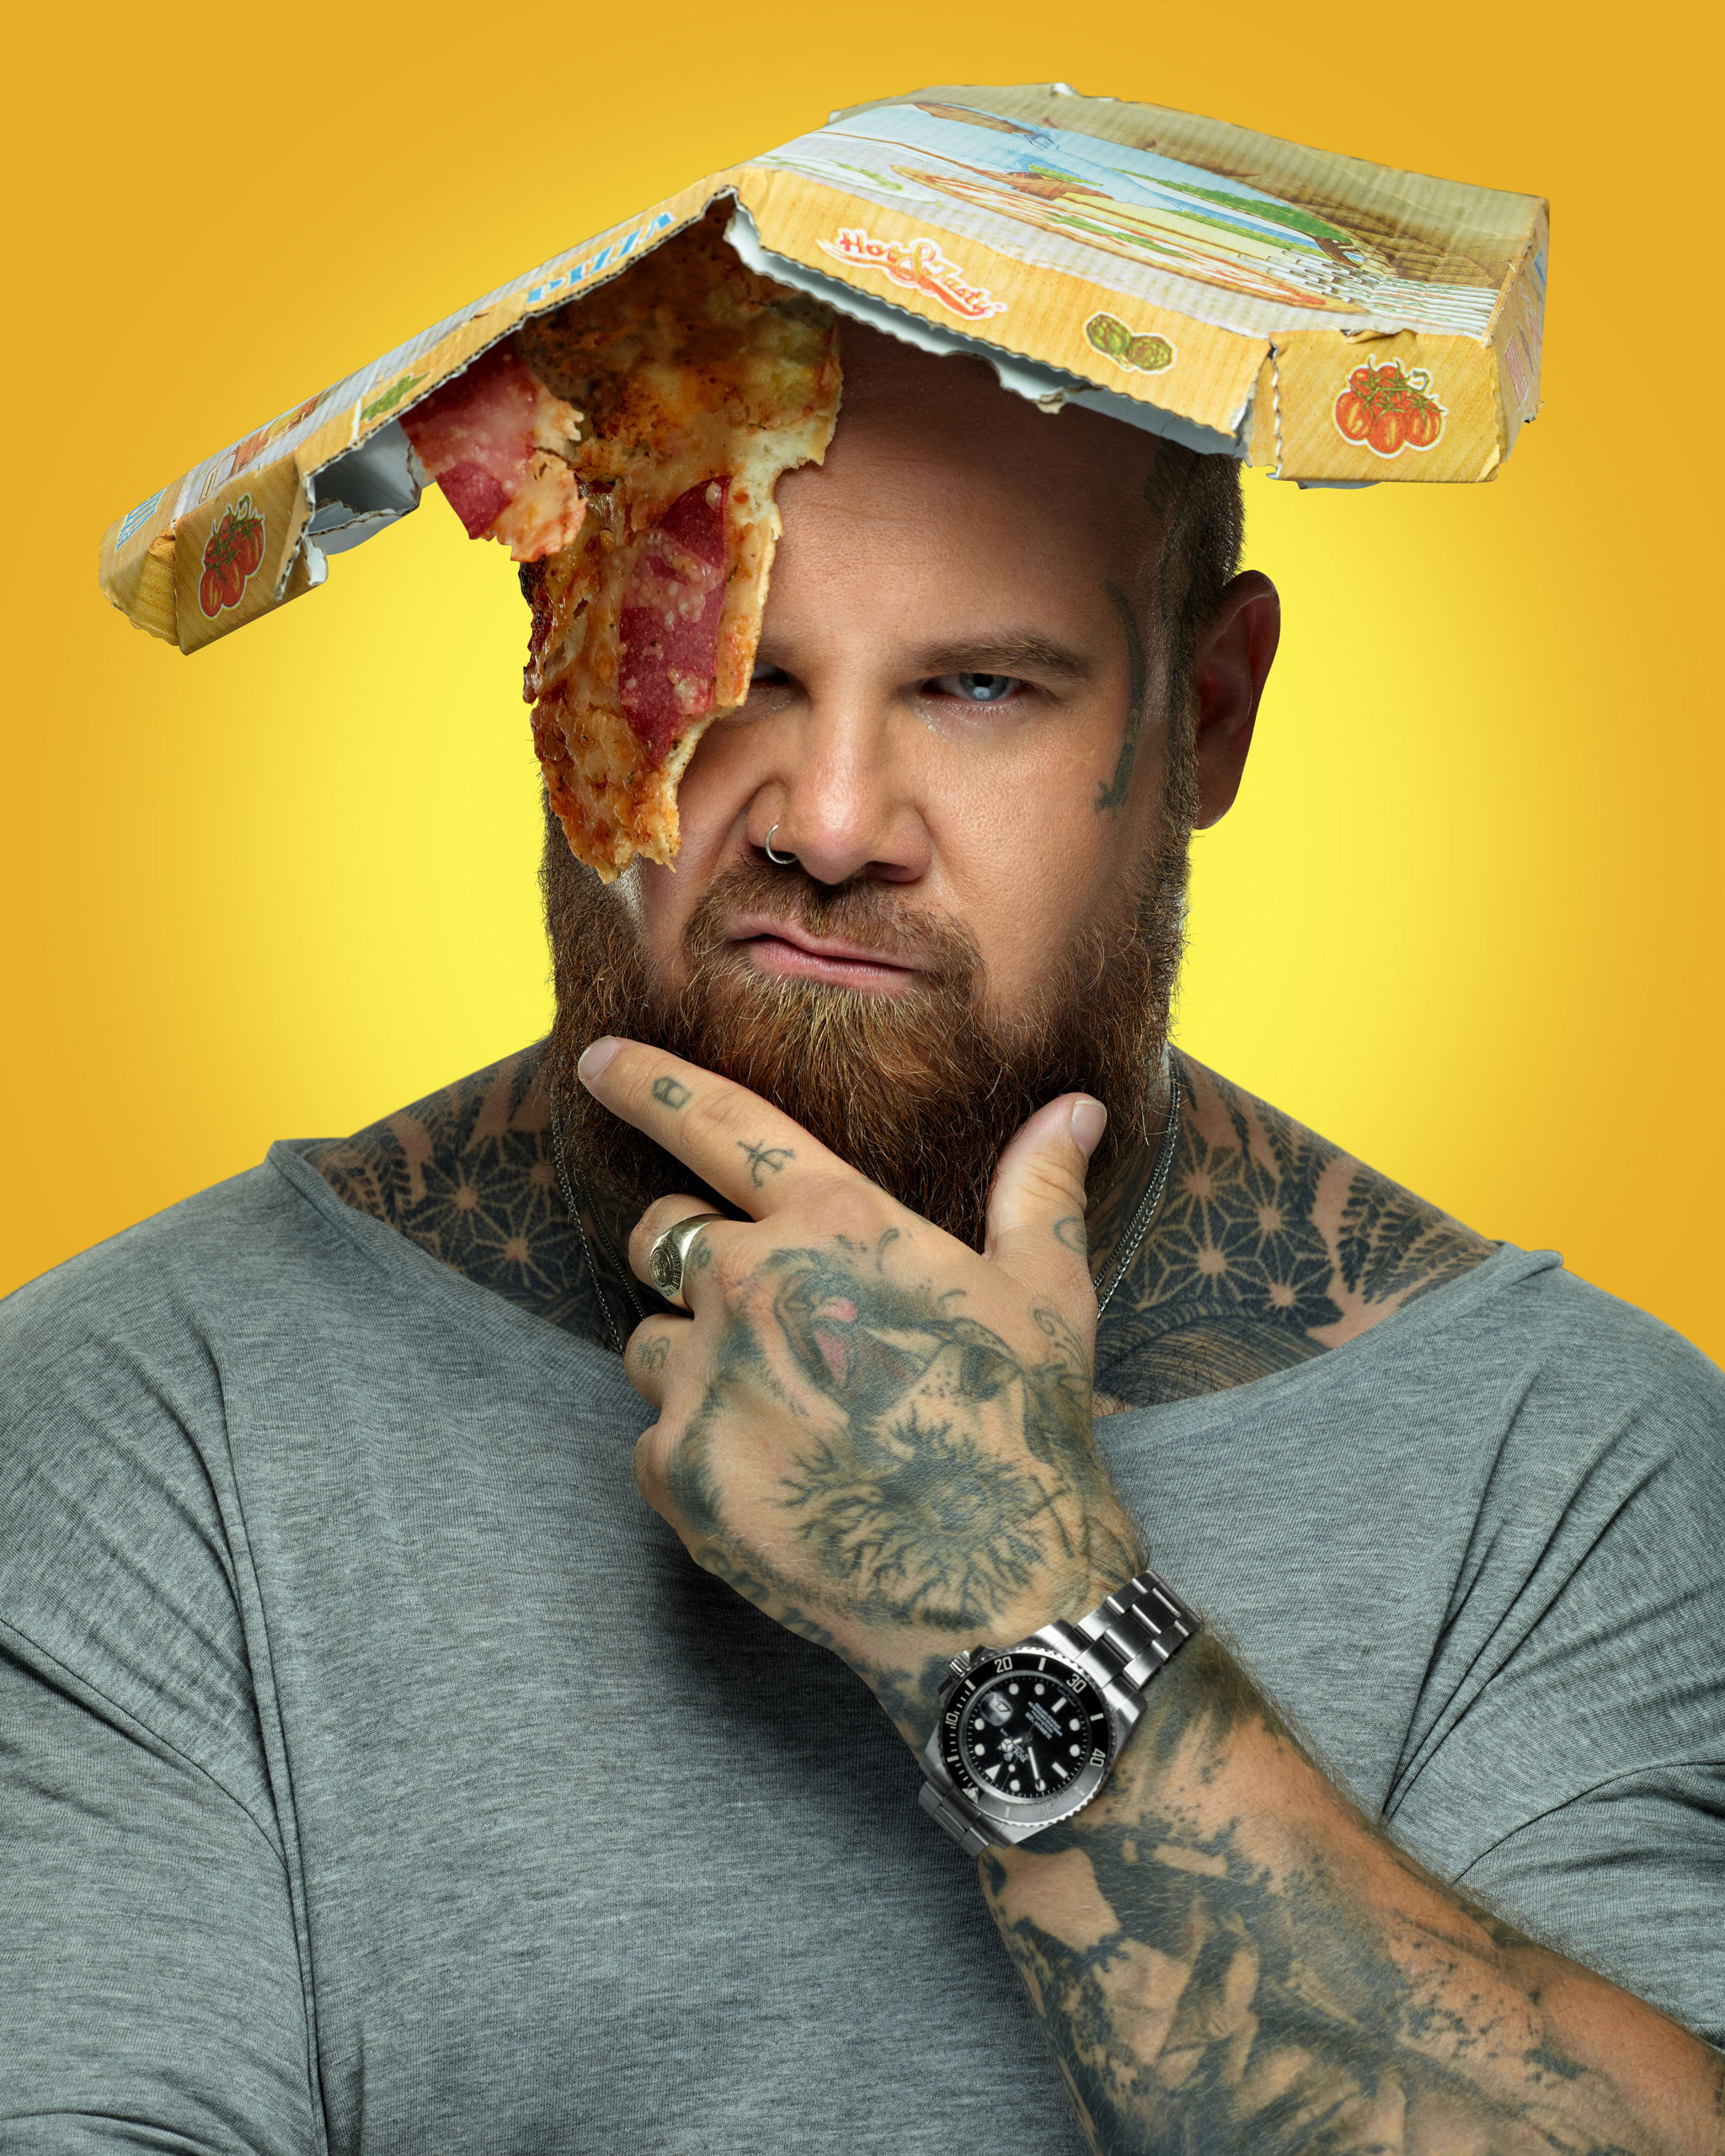 Der Tattoo-Artist Matti vom Fuchsbau in Freiburg. Mit Pizza über dem Auge und einem Pizzakarton auf dem Kopf im Studio abgelichtet für die Citylight-Kampange